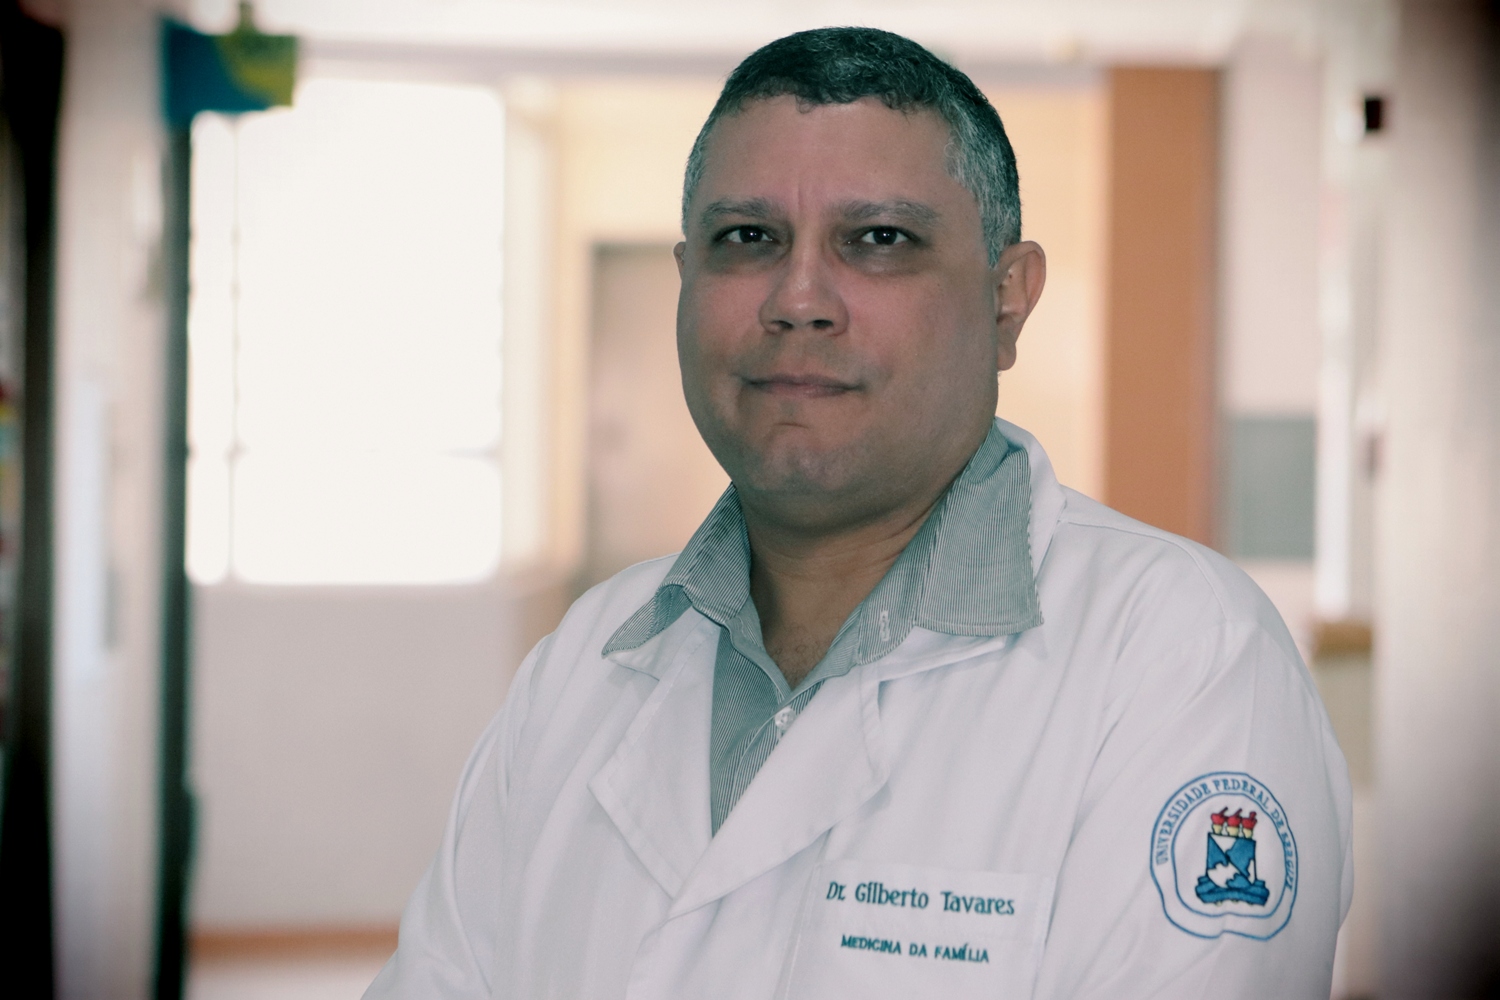 Gilberto Tavares é médico da família e professor de Medicina da UFS. Foto: Josafá Neto/Rádio UFS